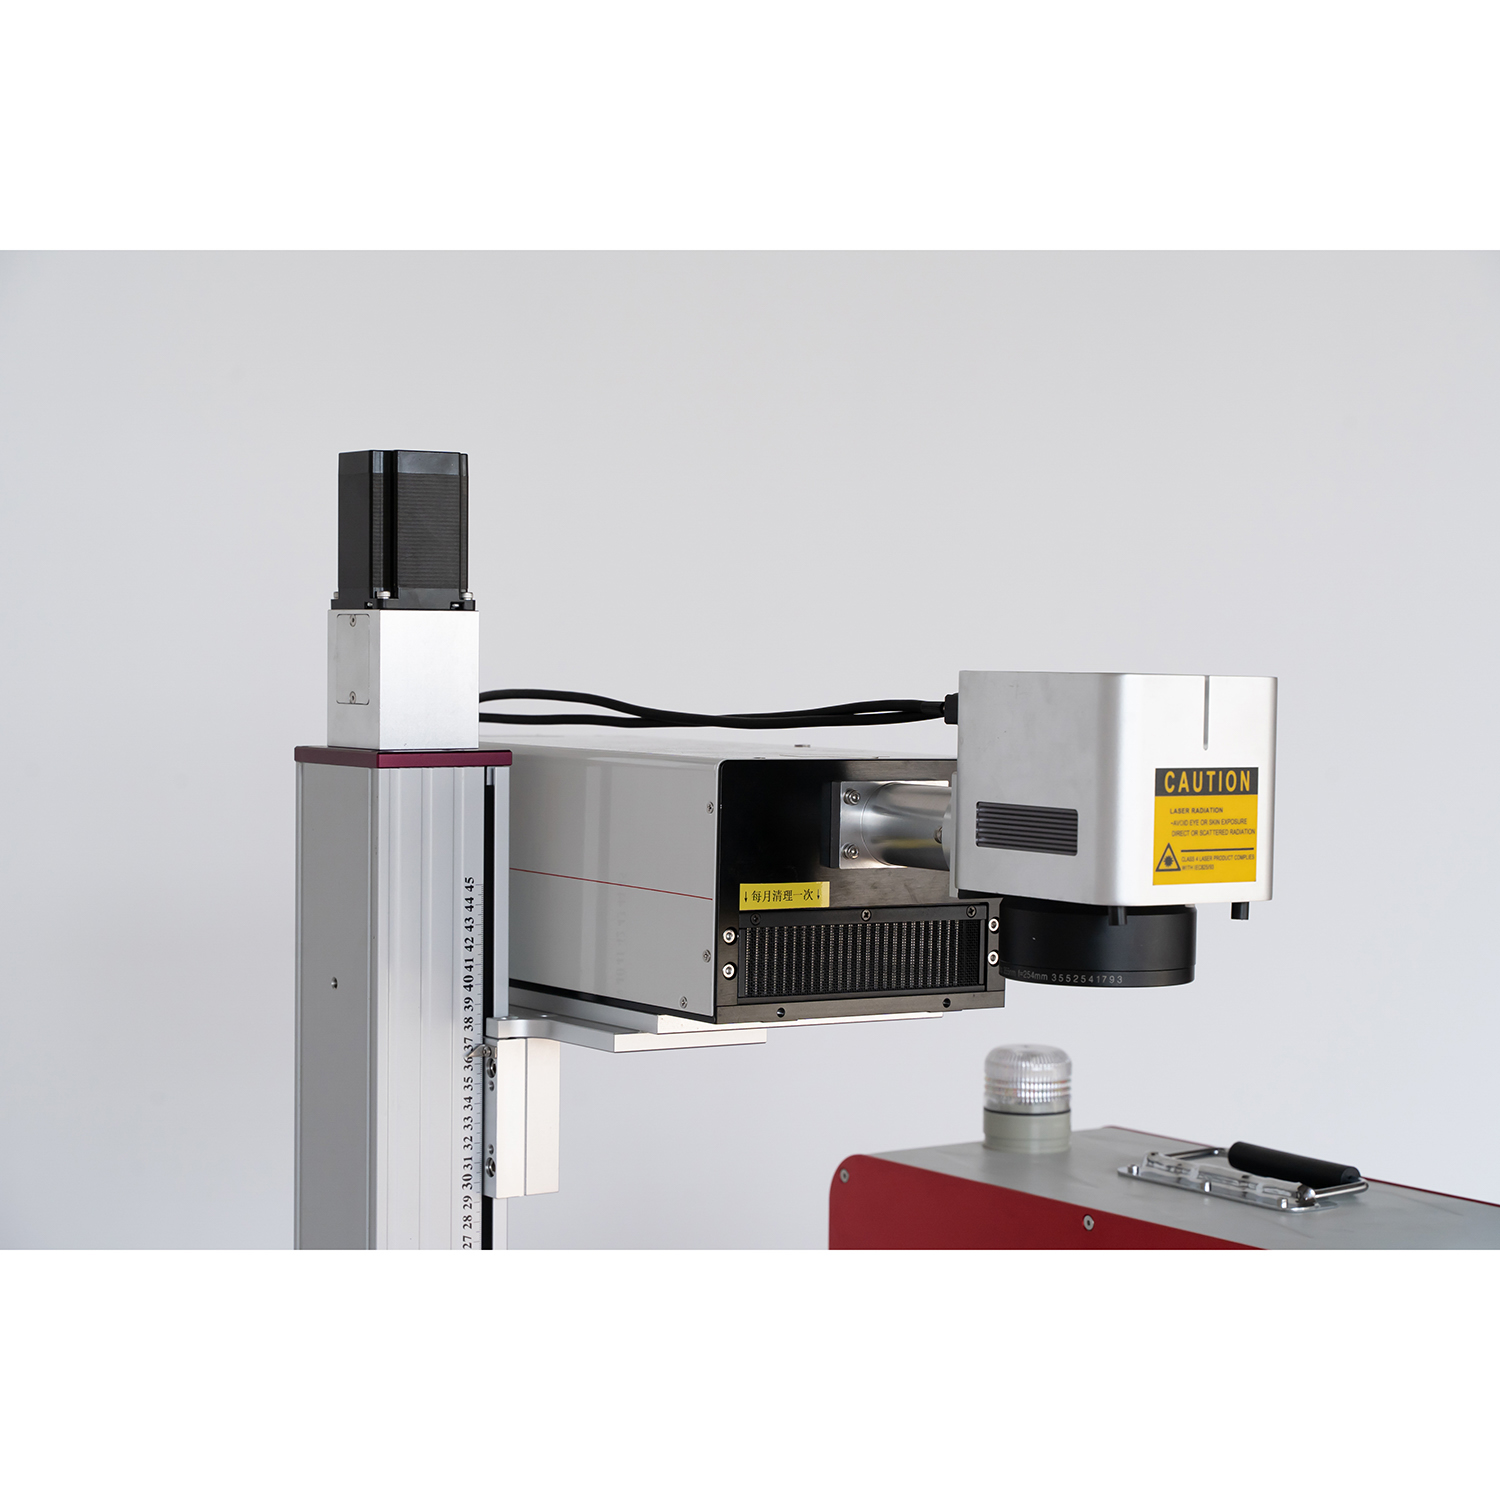 Máquina de marcação a laser UV 3W 5W 355nm para PCB FPC Vidro Cerâmico Impressão Plástica Gravura